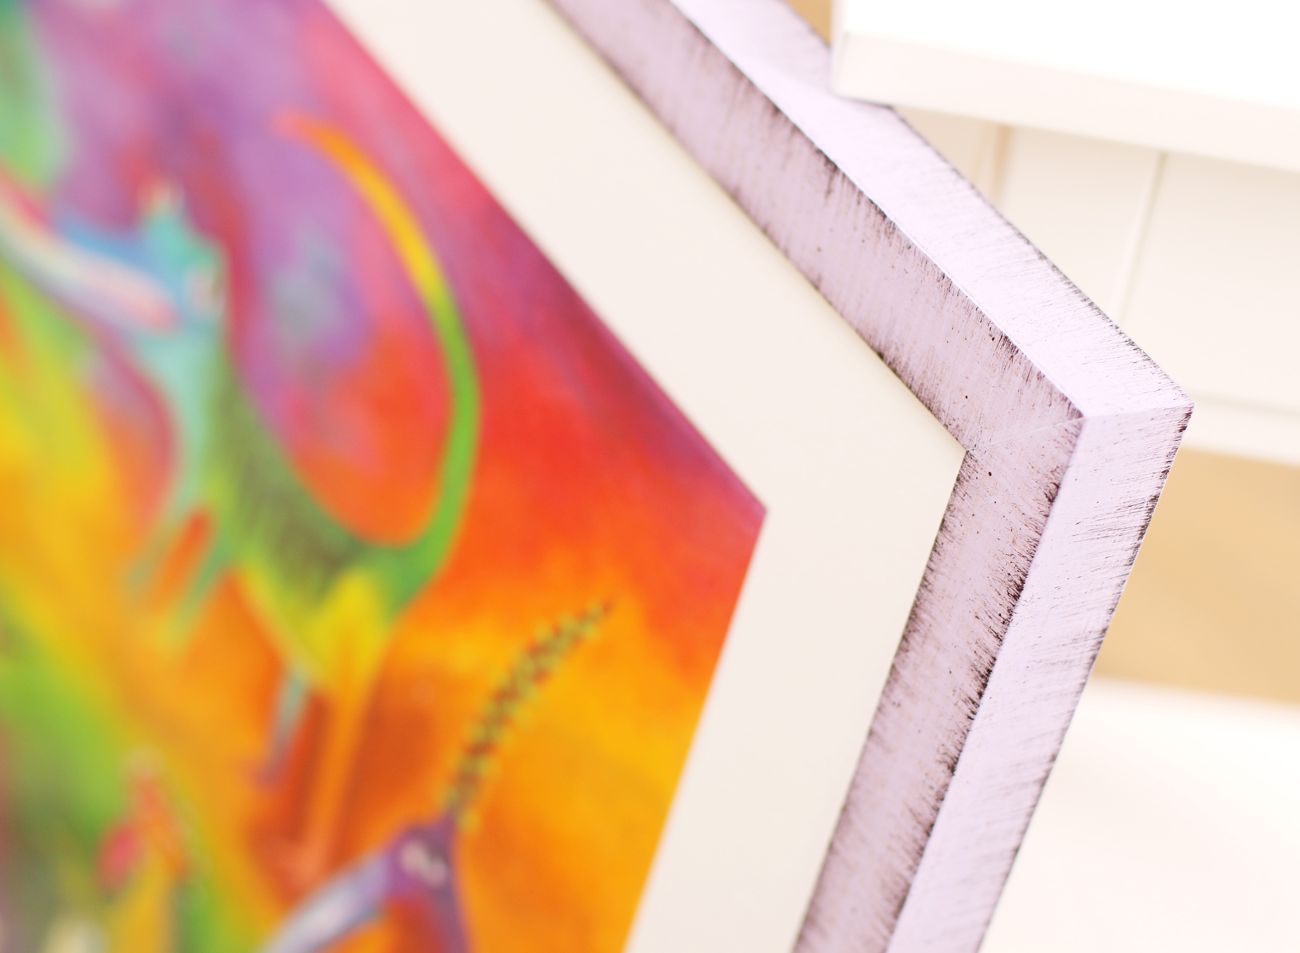  Dětský pastel na papíře ve fialovém rámu | © Rámařství Frame it